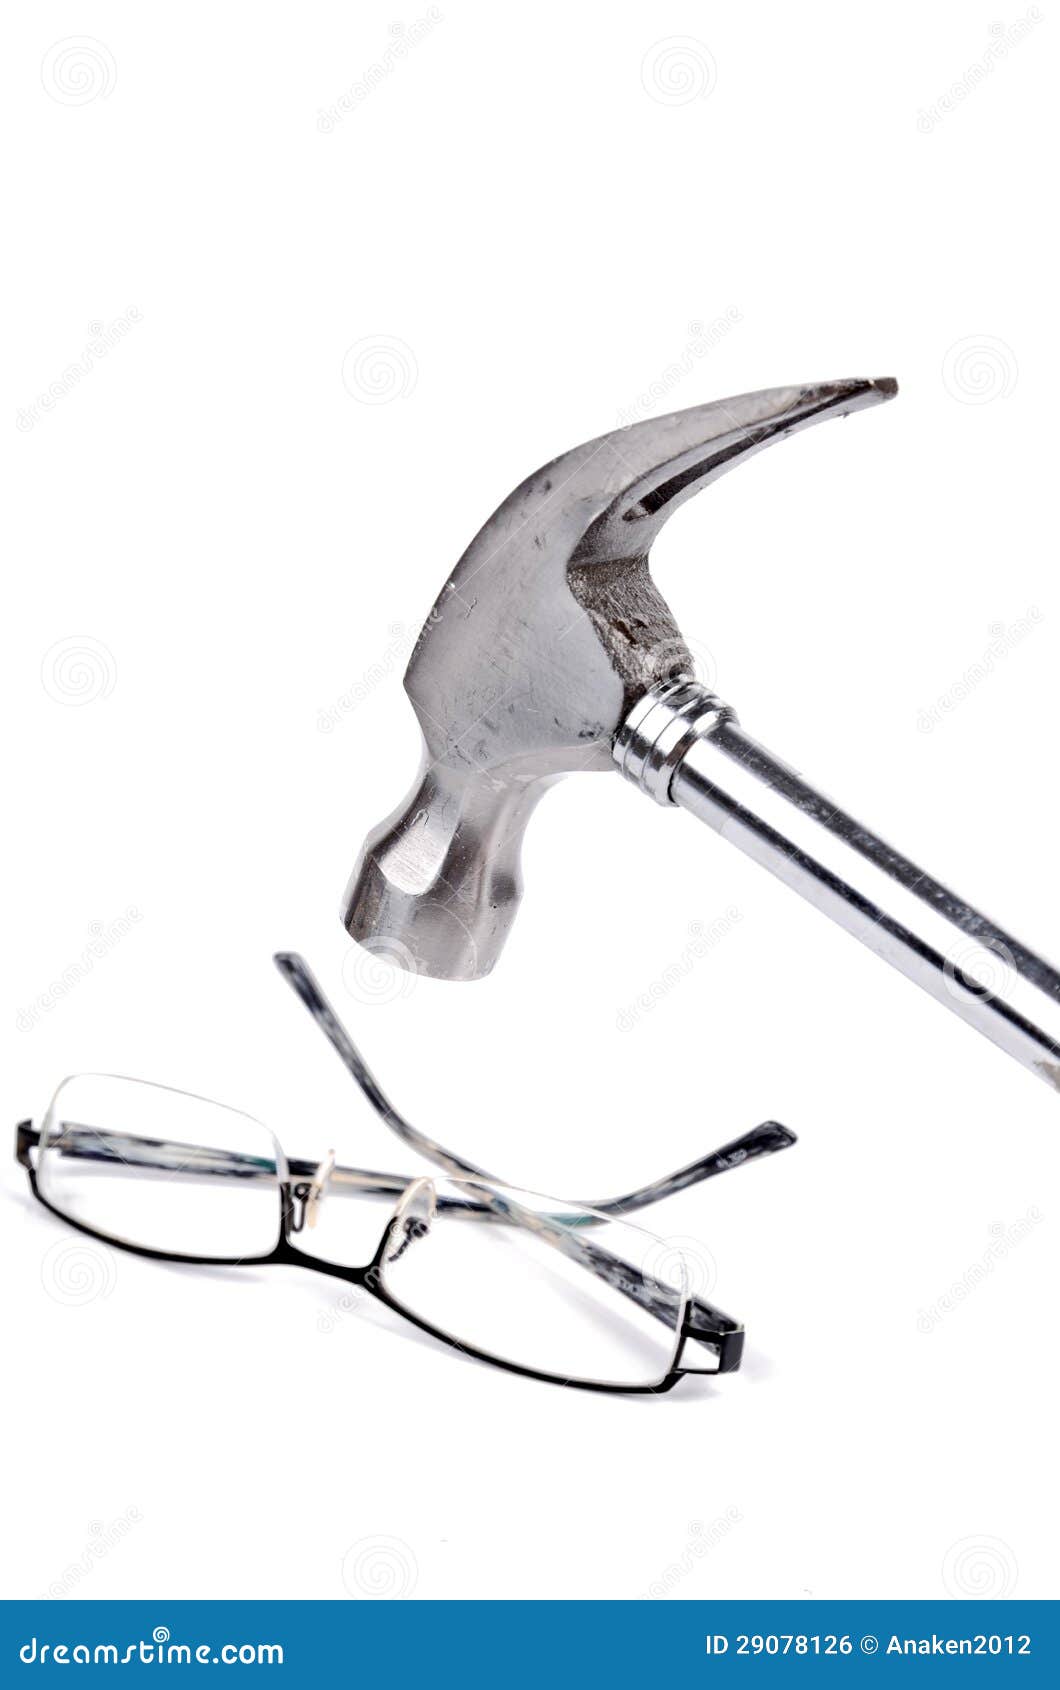 hammer-eye-glasses-29078126.jpg